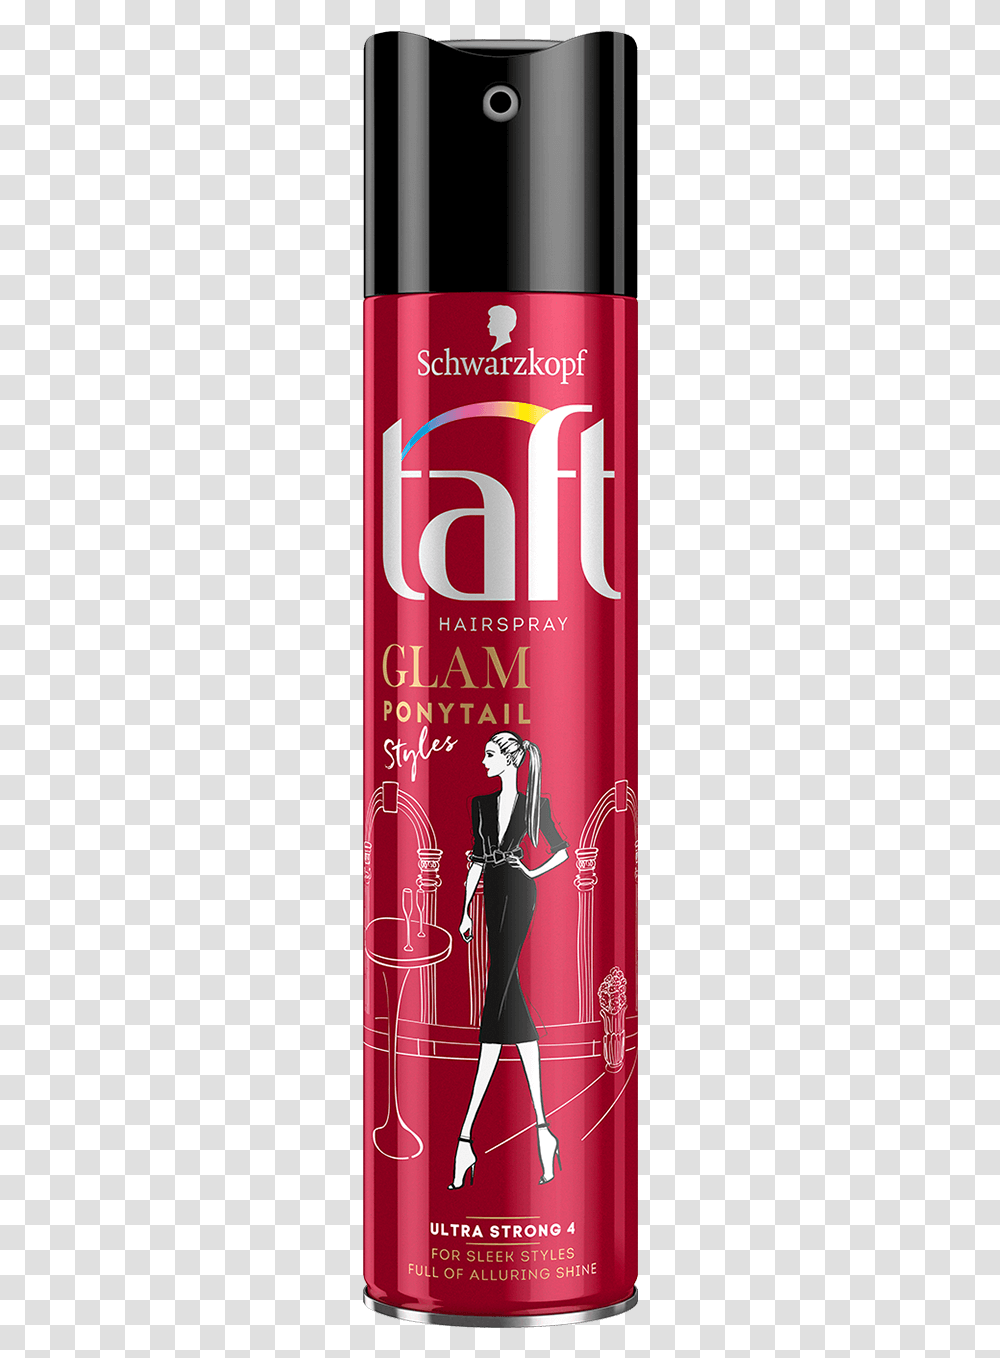 Taft Com Glam Styles Ponytail Cosmetics, Tin, Can, Aluminium, Spray Can Transparent Png